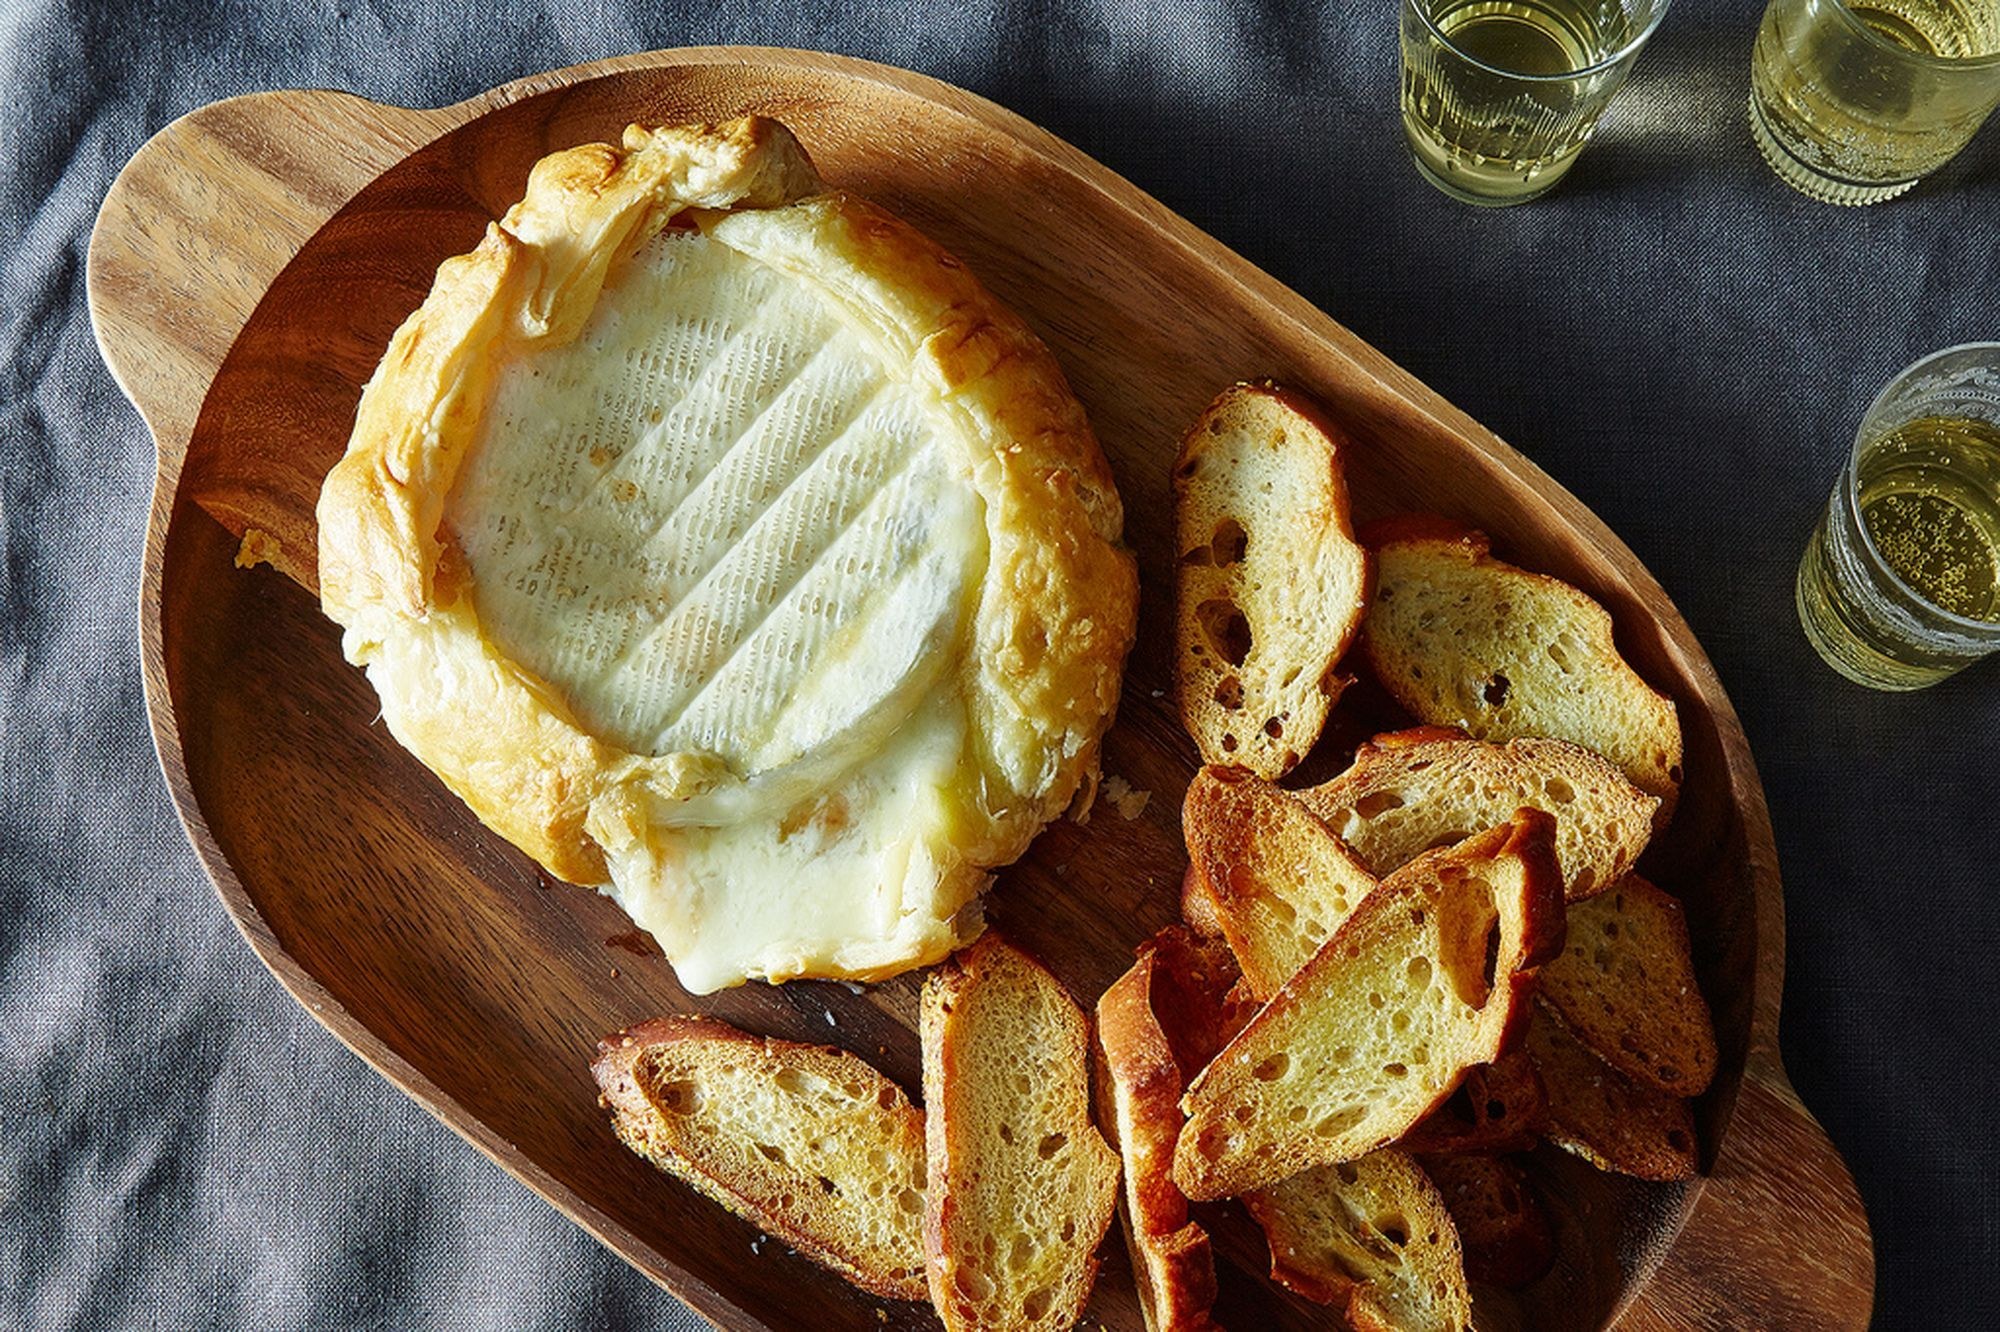 Слоеное тесто сыр бри. Бриошь с сыром Бри. Бриошь с камамбером. Сыр Бри и камамбер в духовке. Сыр камамбер в духовке с хлебом.